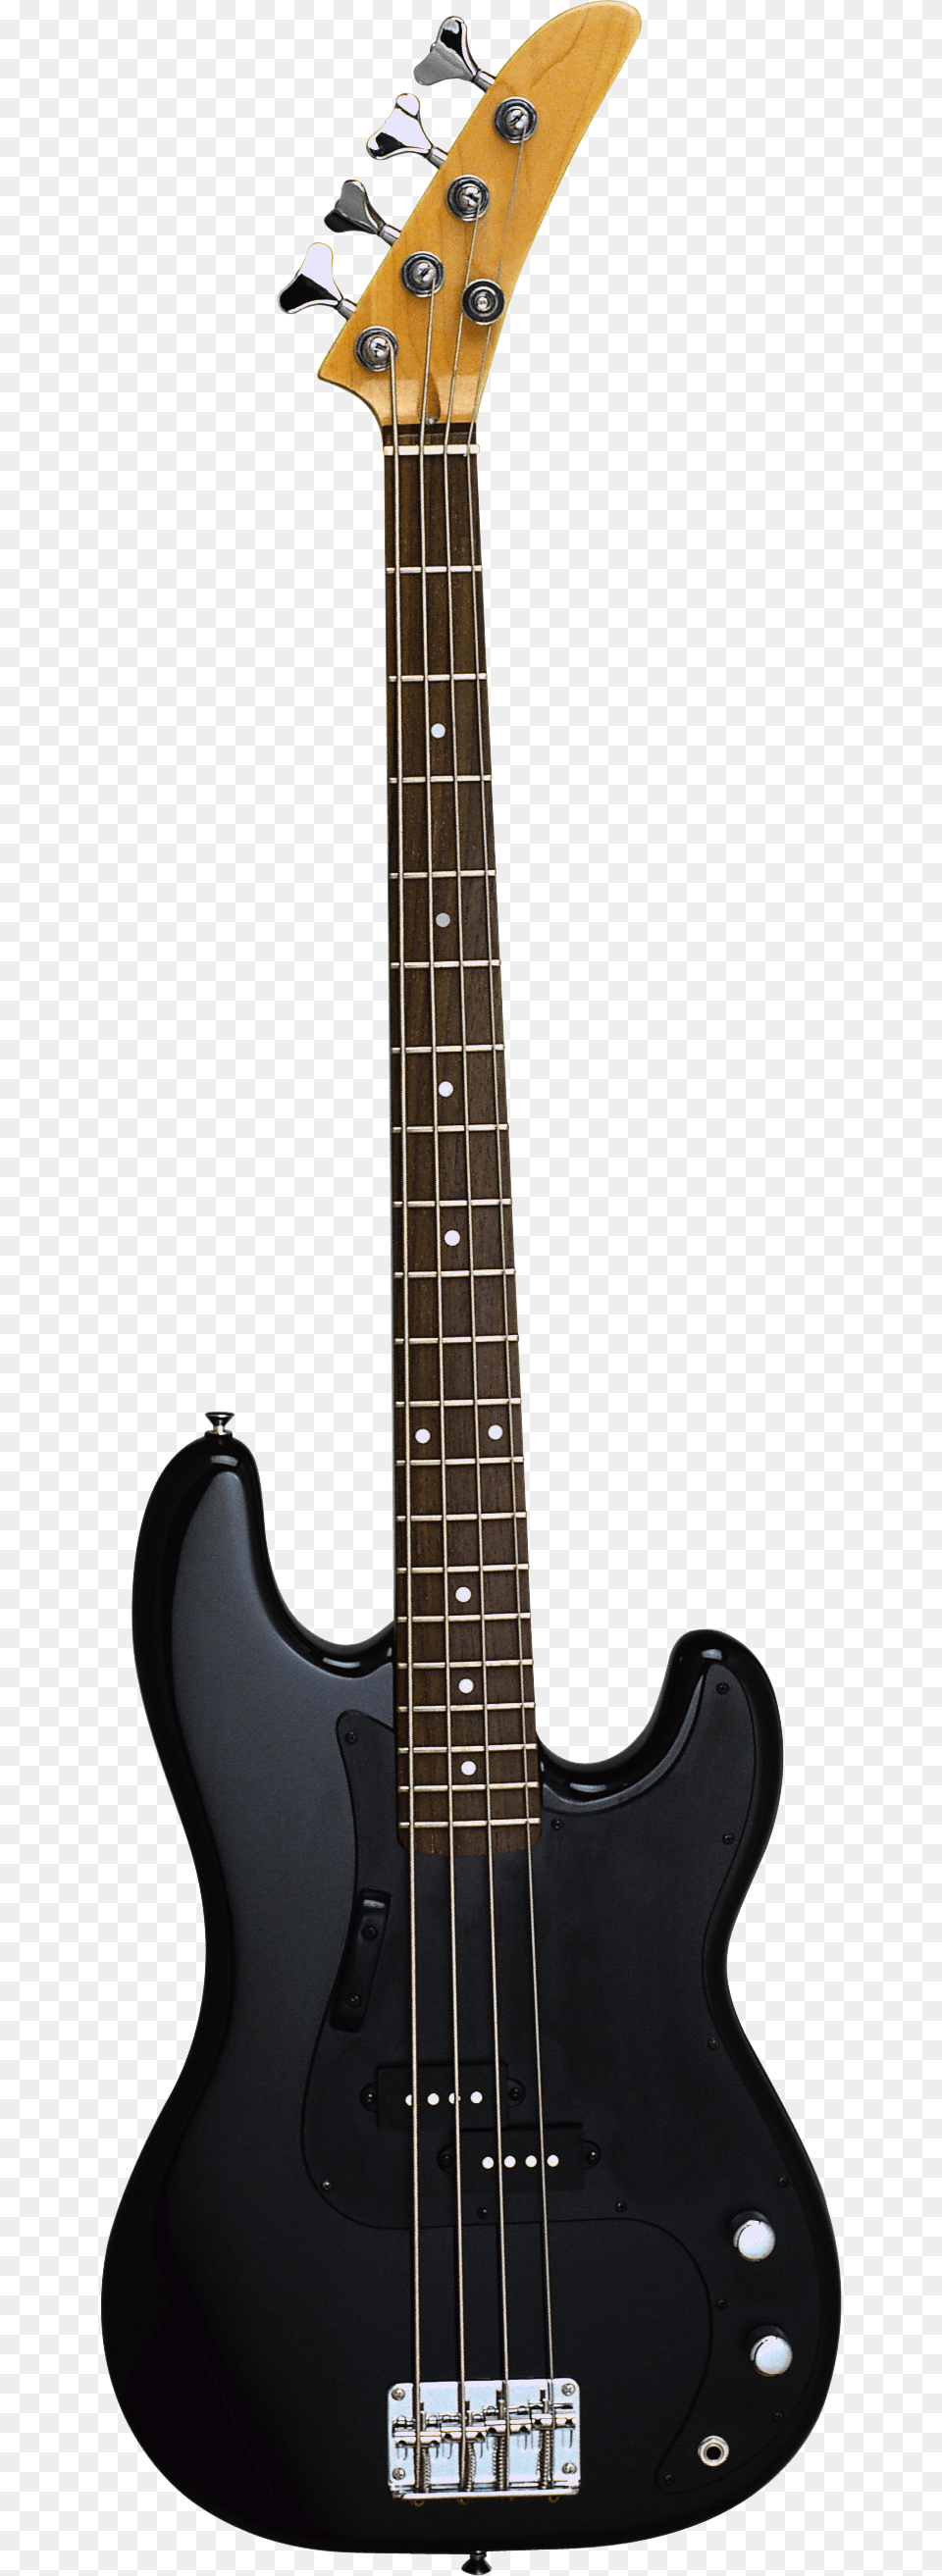 Hd Background Guitar, Bass Guitar, Musical Instrument Png